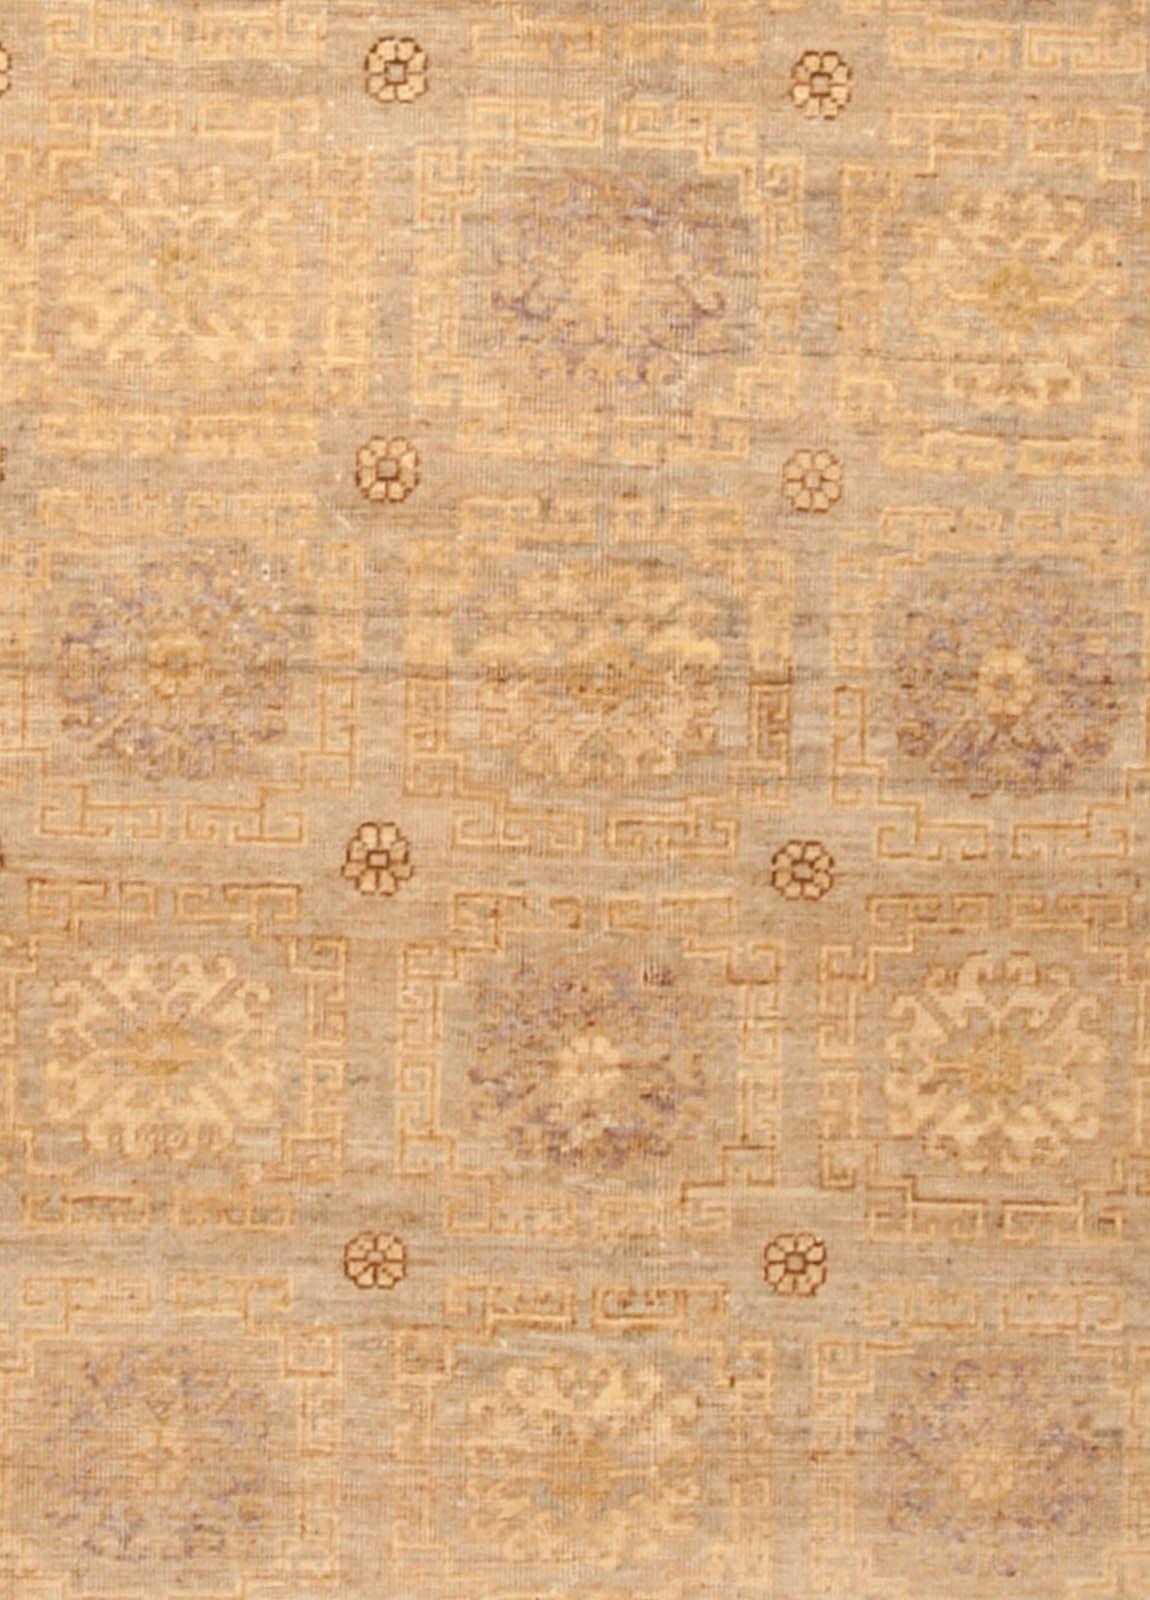 New Samarkand rug 2
Size: 10'4